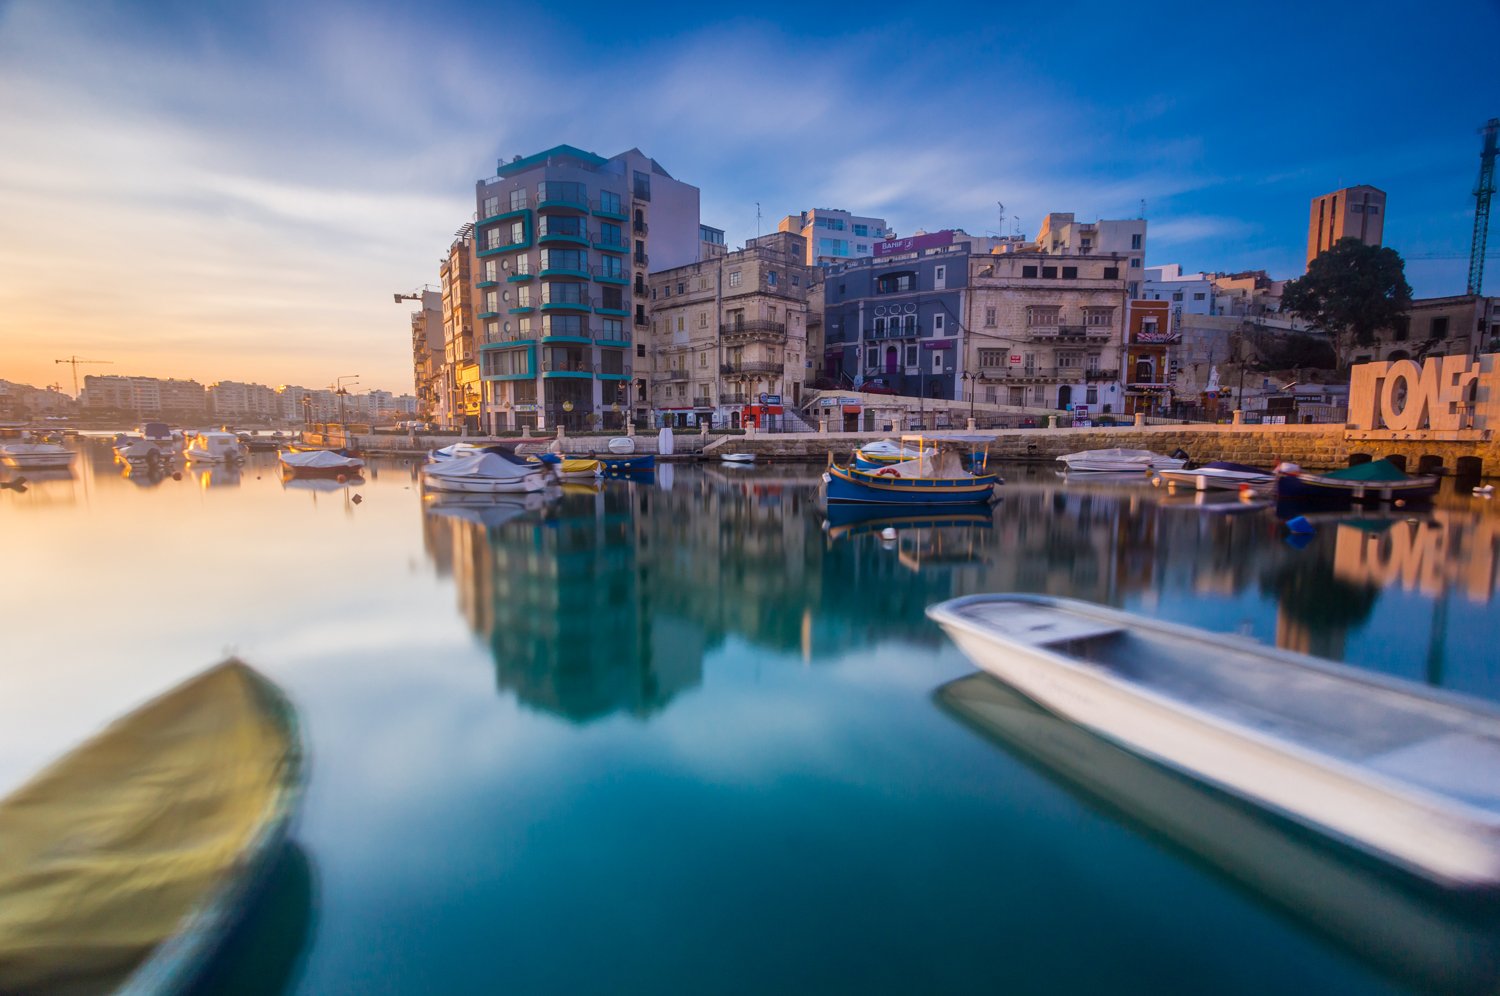 water, Malta, city, architecture, long exposure, travel, boats, sky, Nikolay Tatarchuk